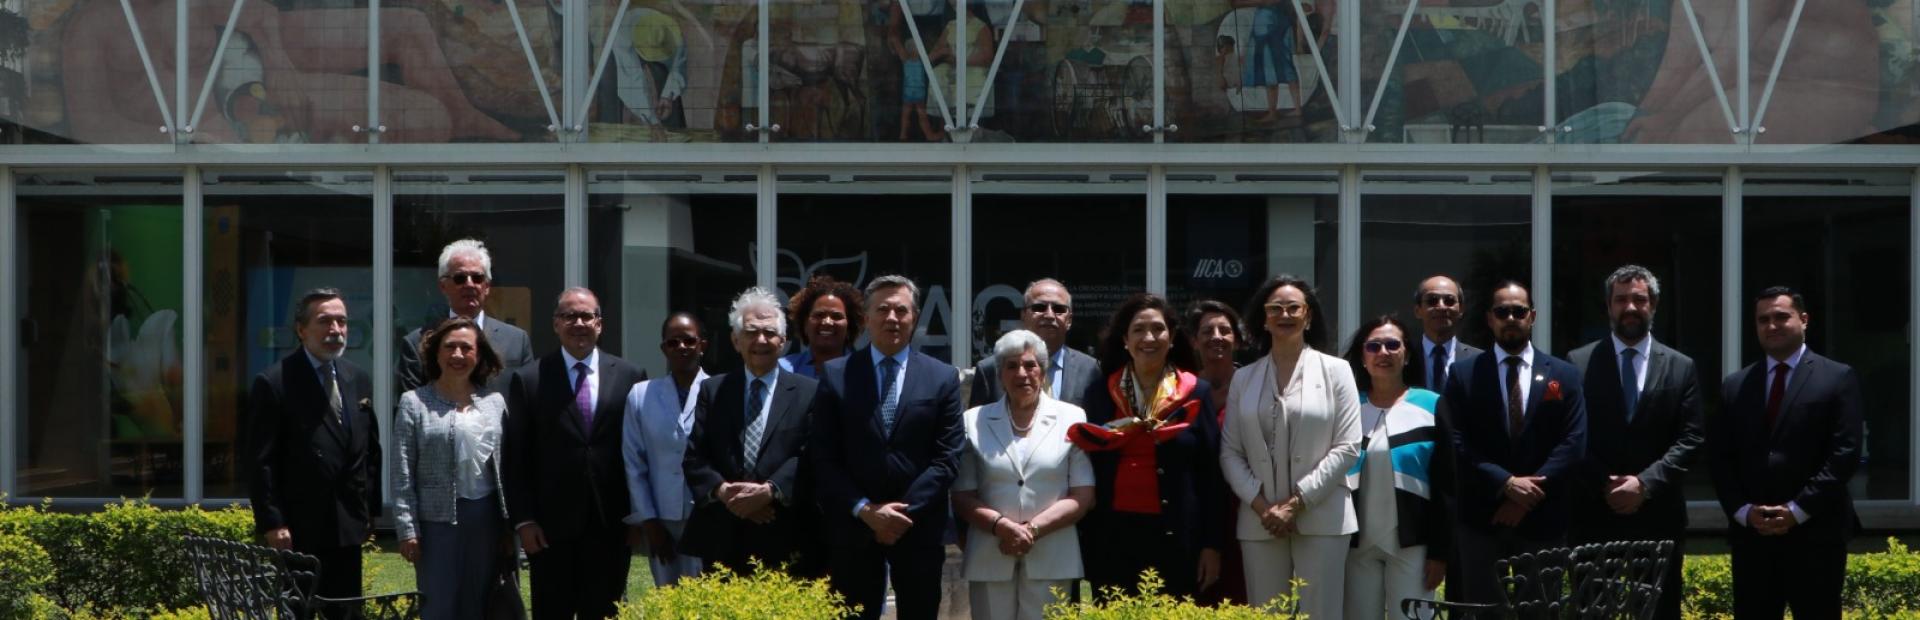 Los embajadores visitaron la sede central del IICA en San José y también apoyaron el proceso de transformación institucional llevado a cabo por el Director General de este organismo, Manuel Otero.